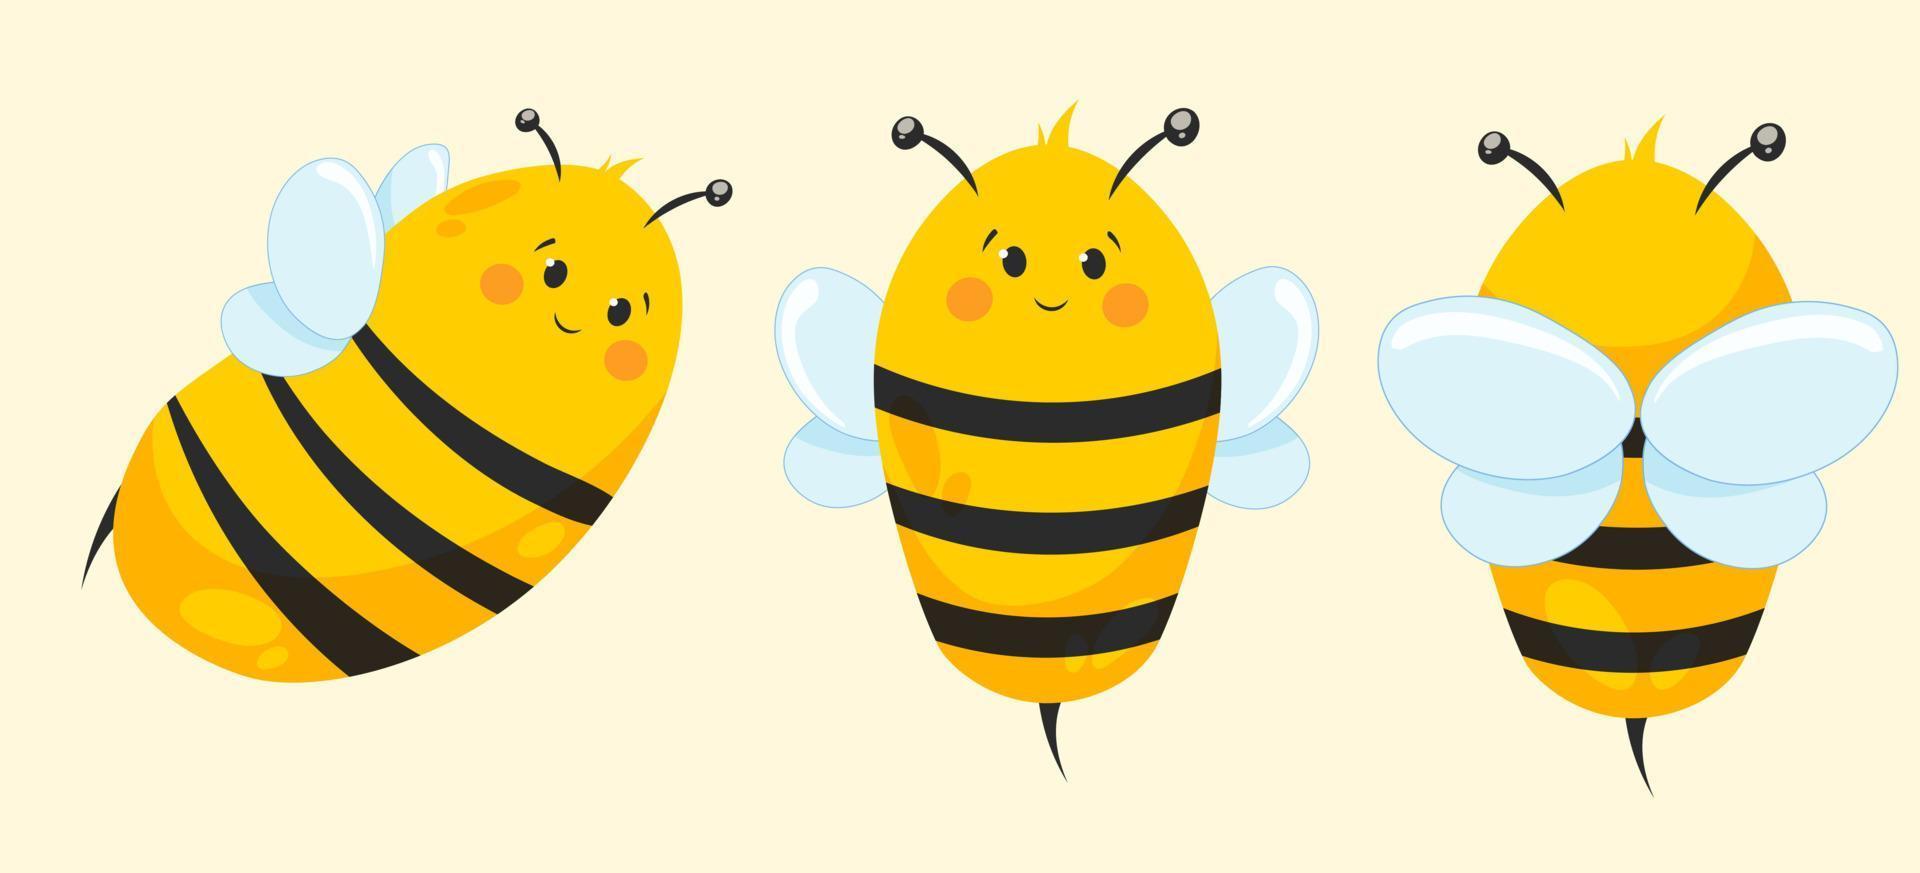 abelha bonito dos desenhos animados em diferentes ângulos. abelha, zangão para artigos infantis vetor